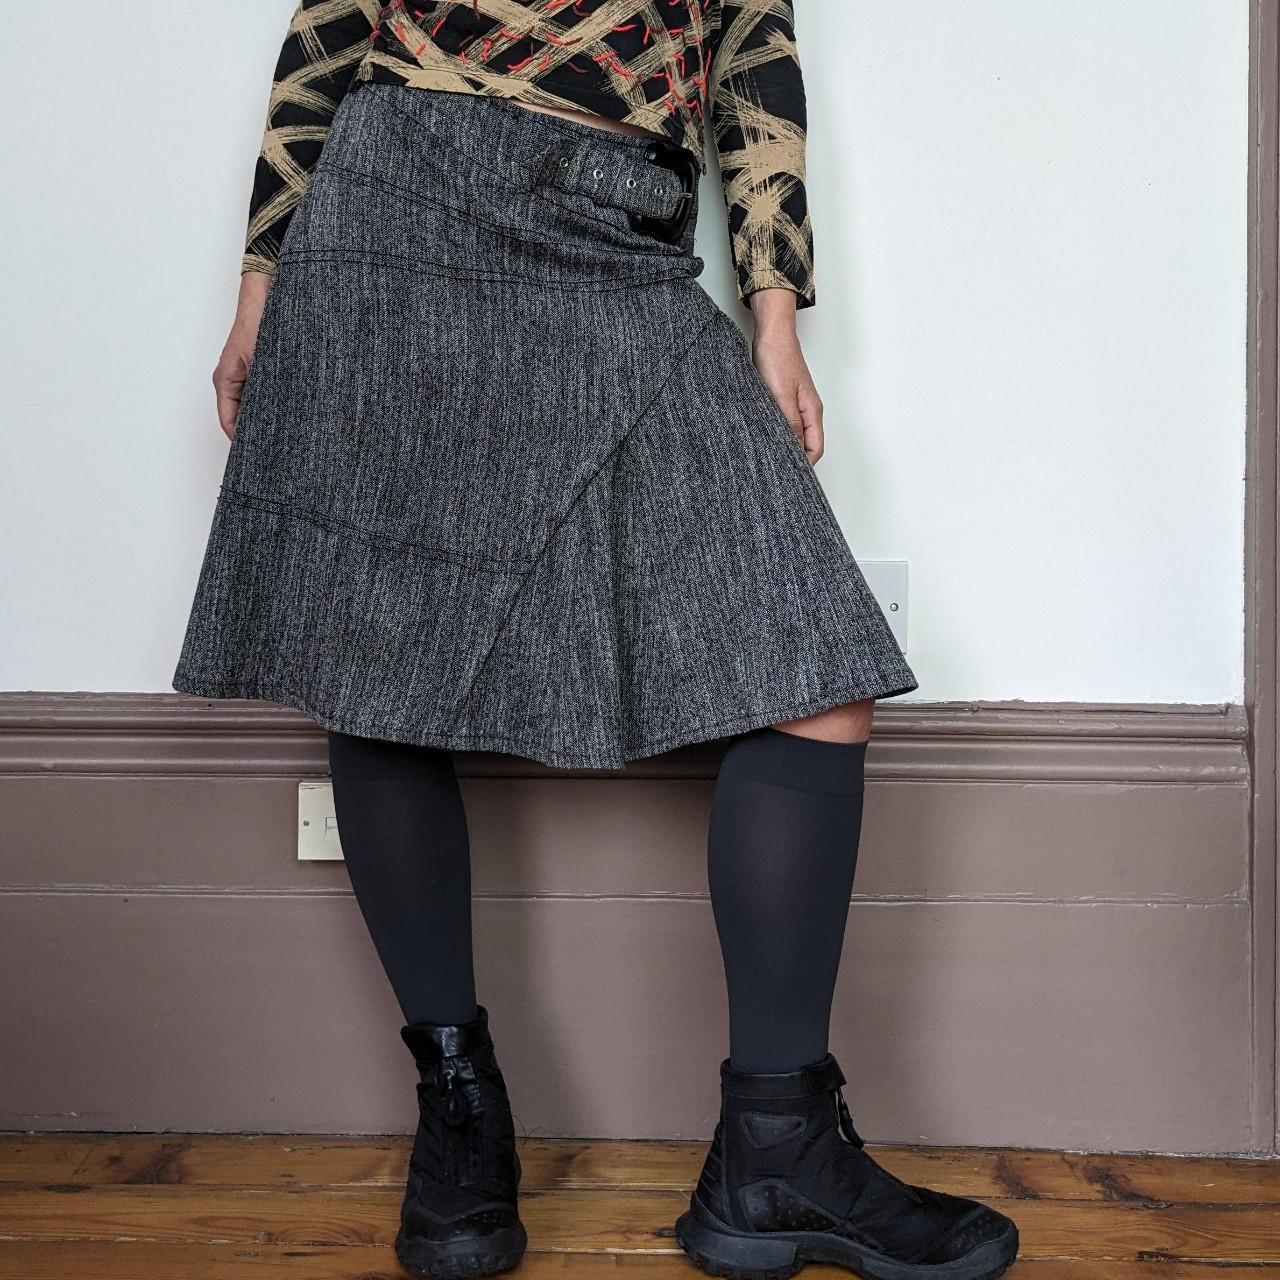 Vintage belted grey midi skirt Vintage French brand... - Depop